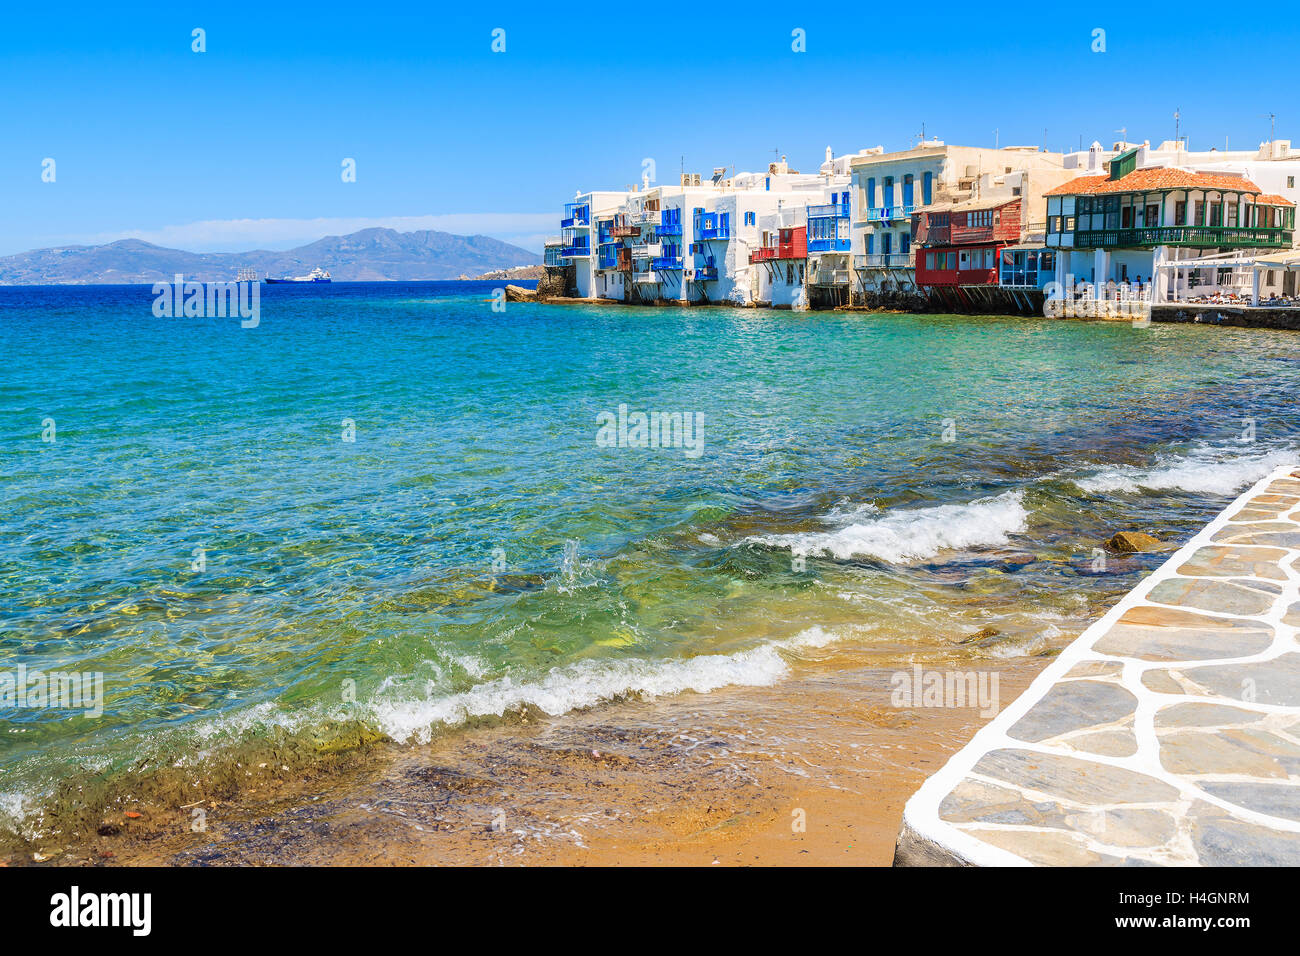 La vista del mar bahía con Little Venice coloridas casas en fondo, Mykonos, islas Cícladas, Grecia Foto de stock